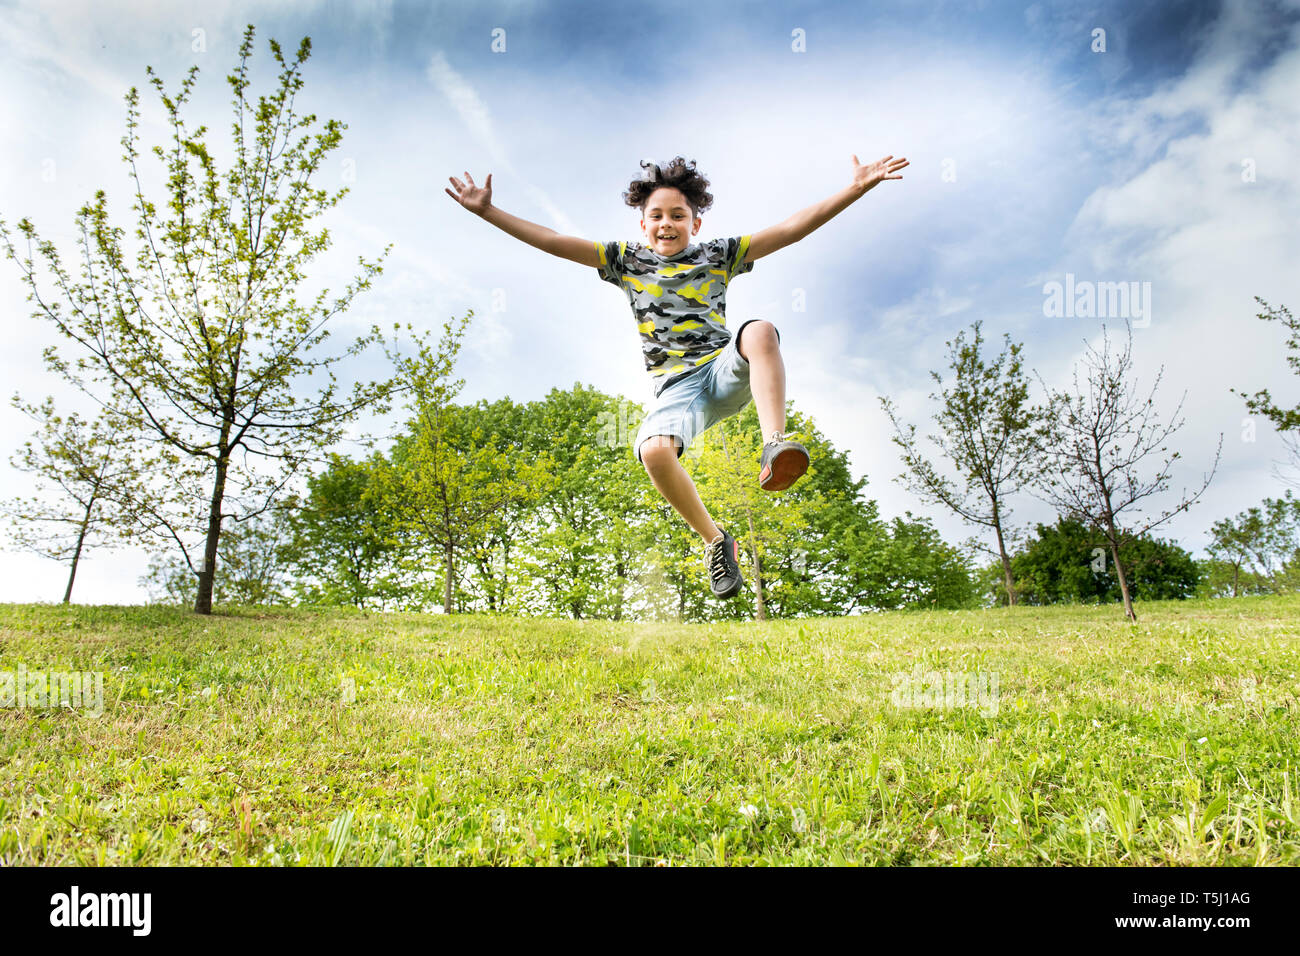 Happy energische junge Junge sprang hoch in die Luft, als er über das Gras in einem Garten oder Park mit ausgestreckten Armen in einem Low Angle View läuft Stockfoto